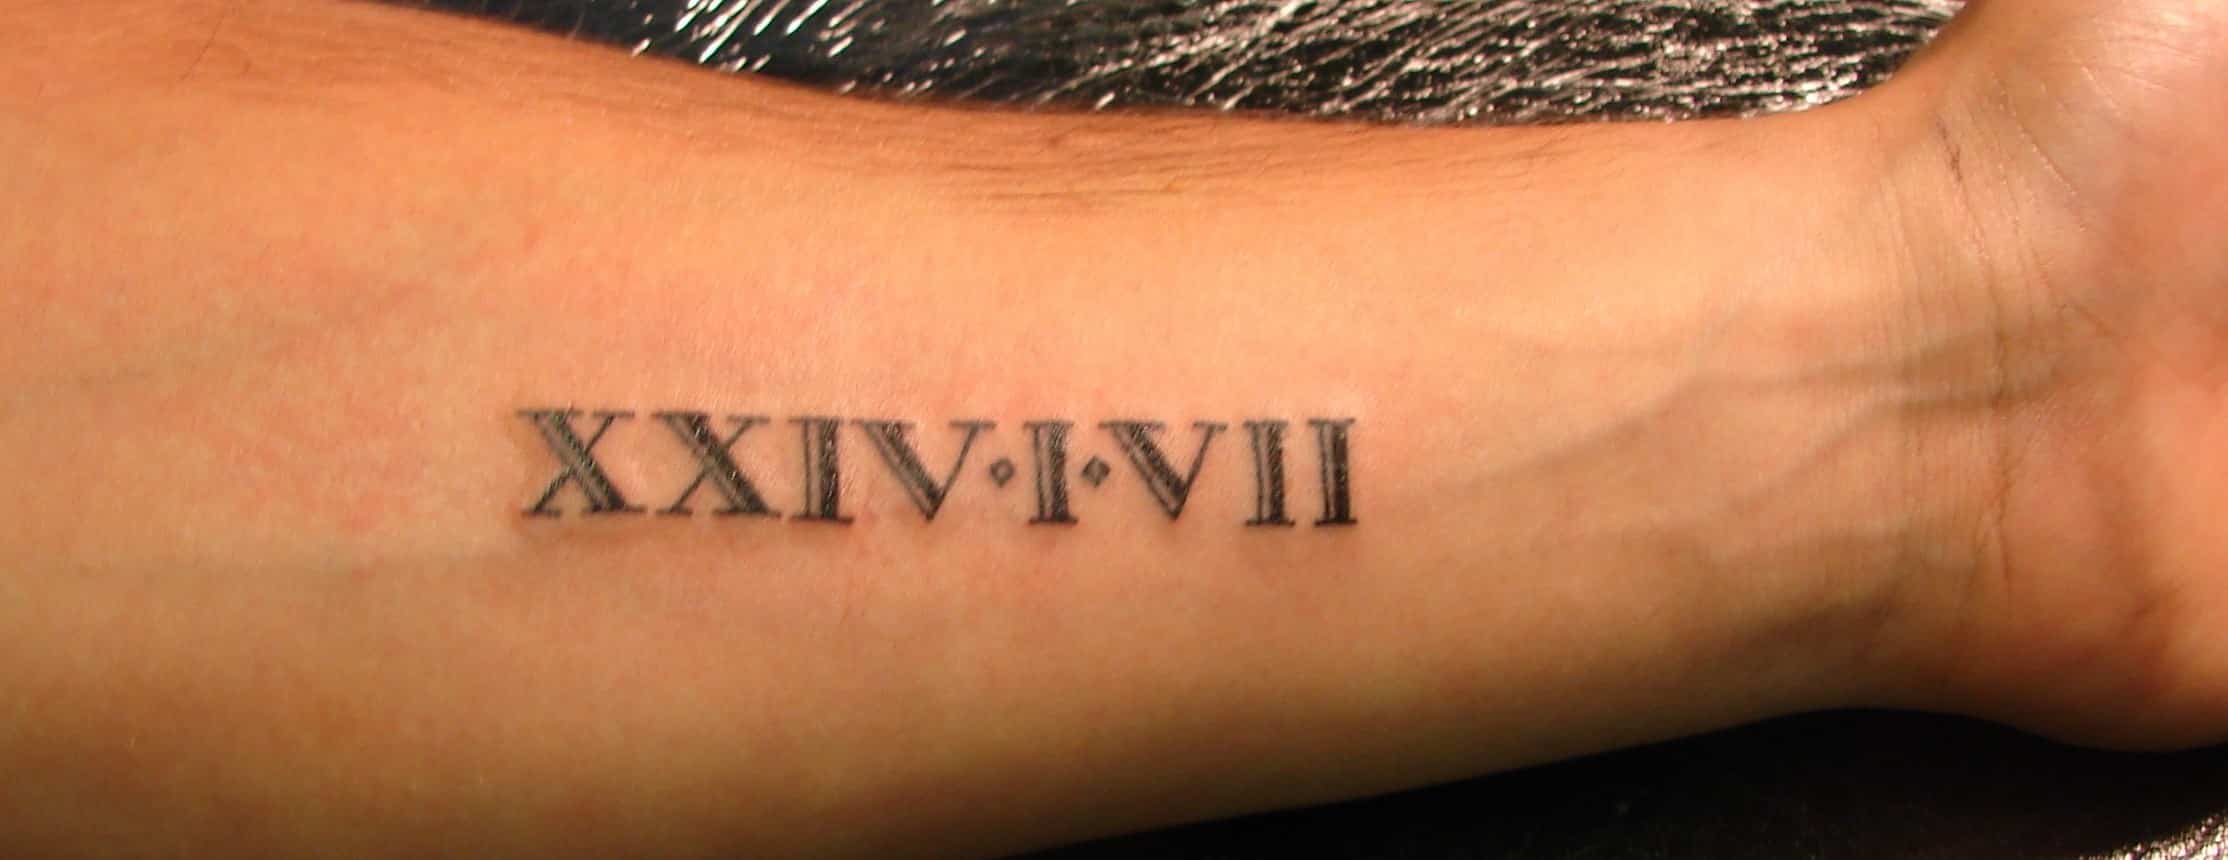 roman numerals tattoo